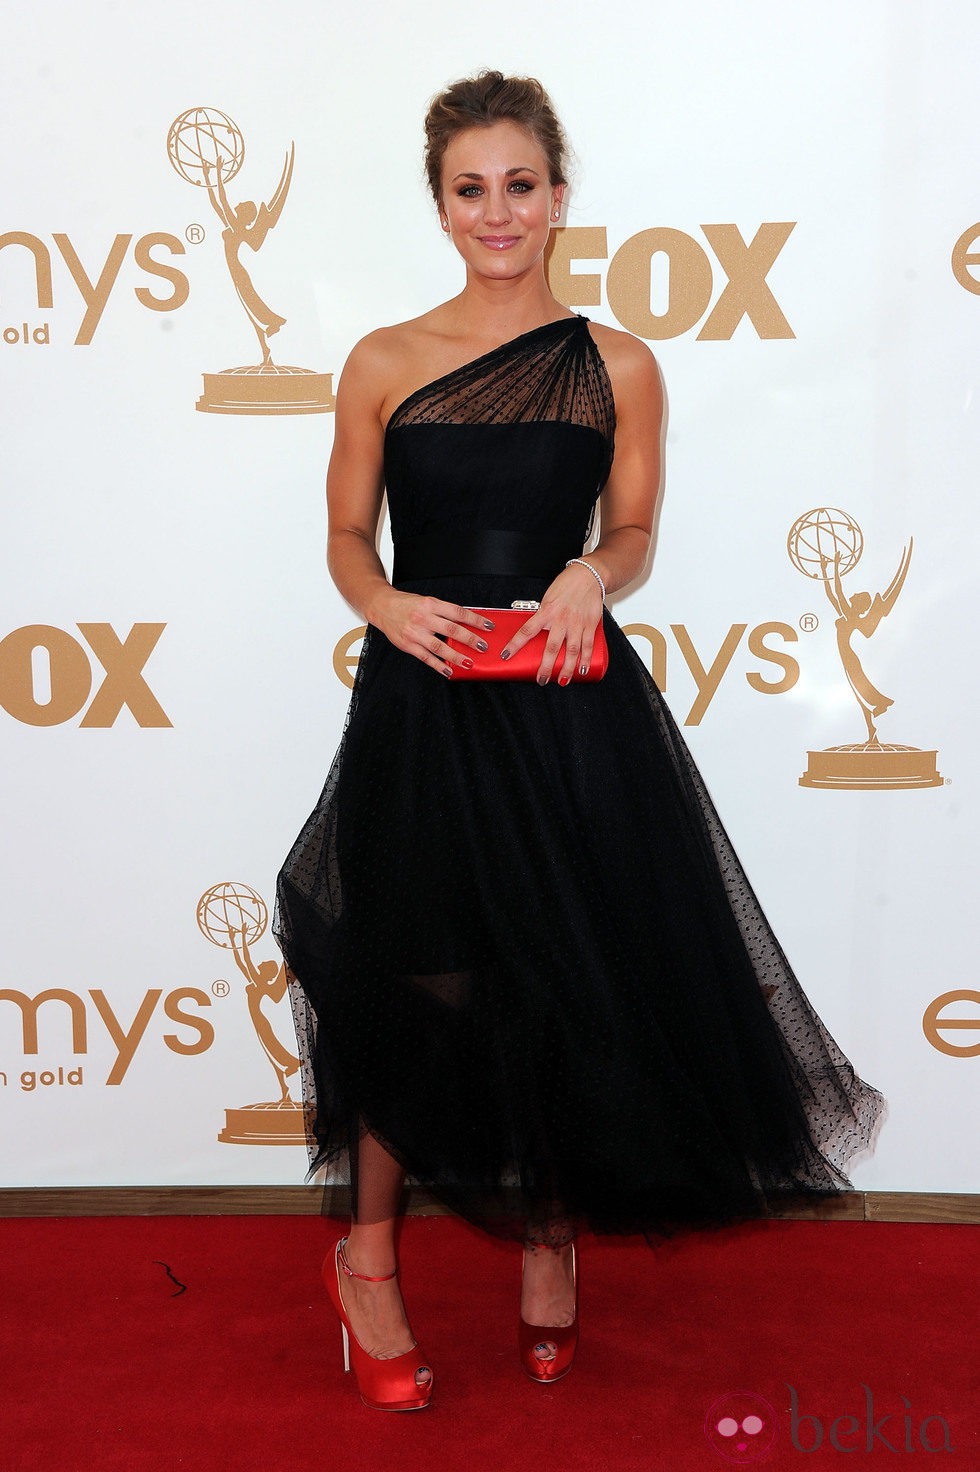 Kaley Cuoco en los premios Emmy 2011